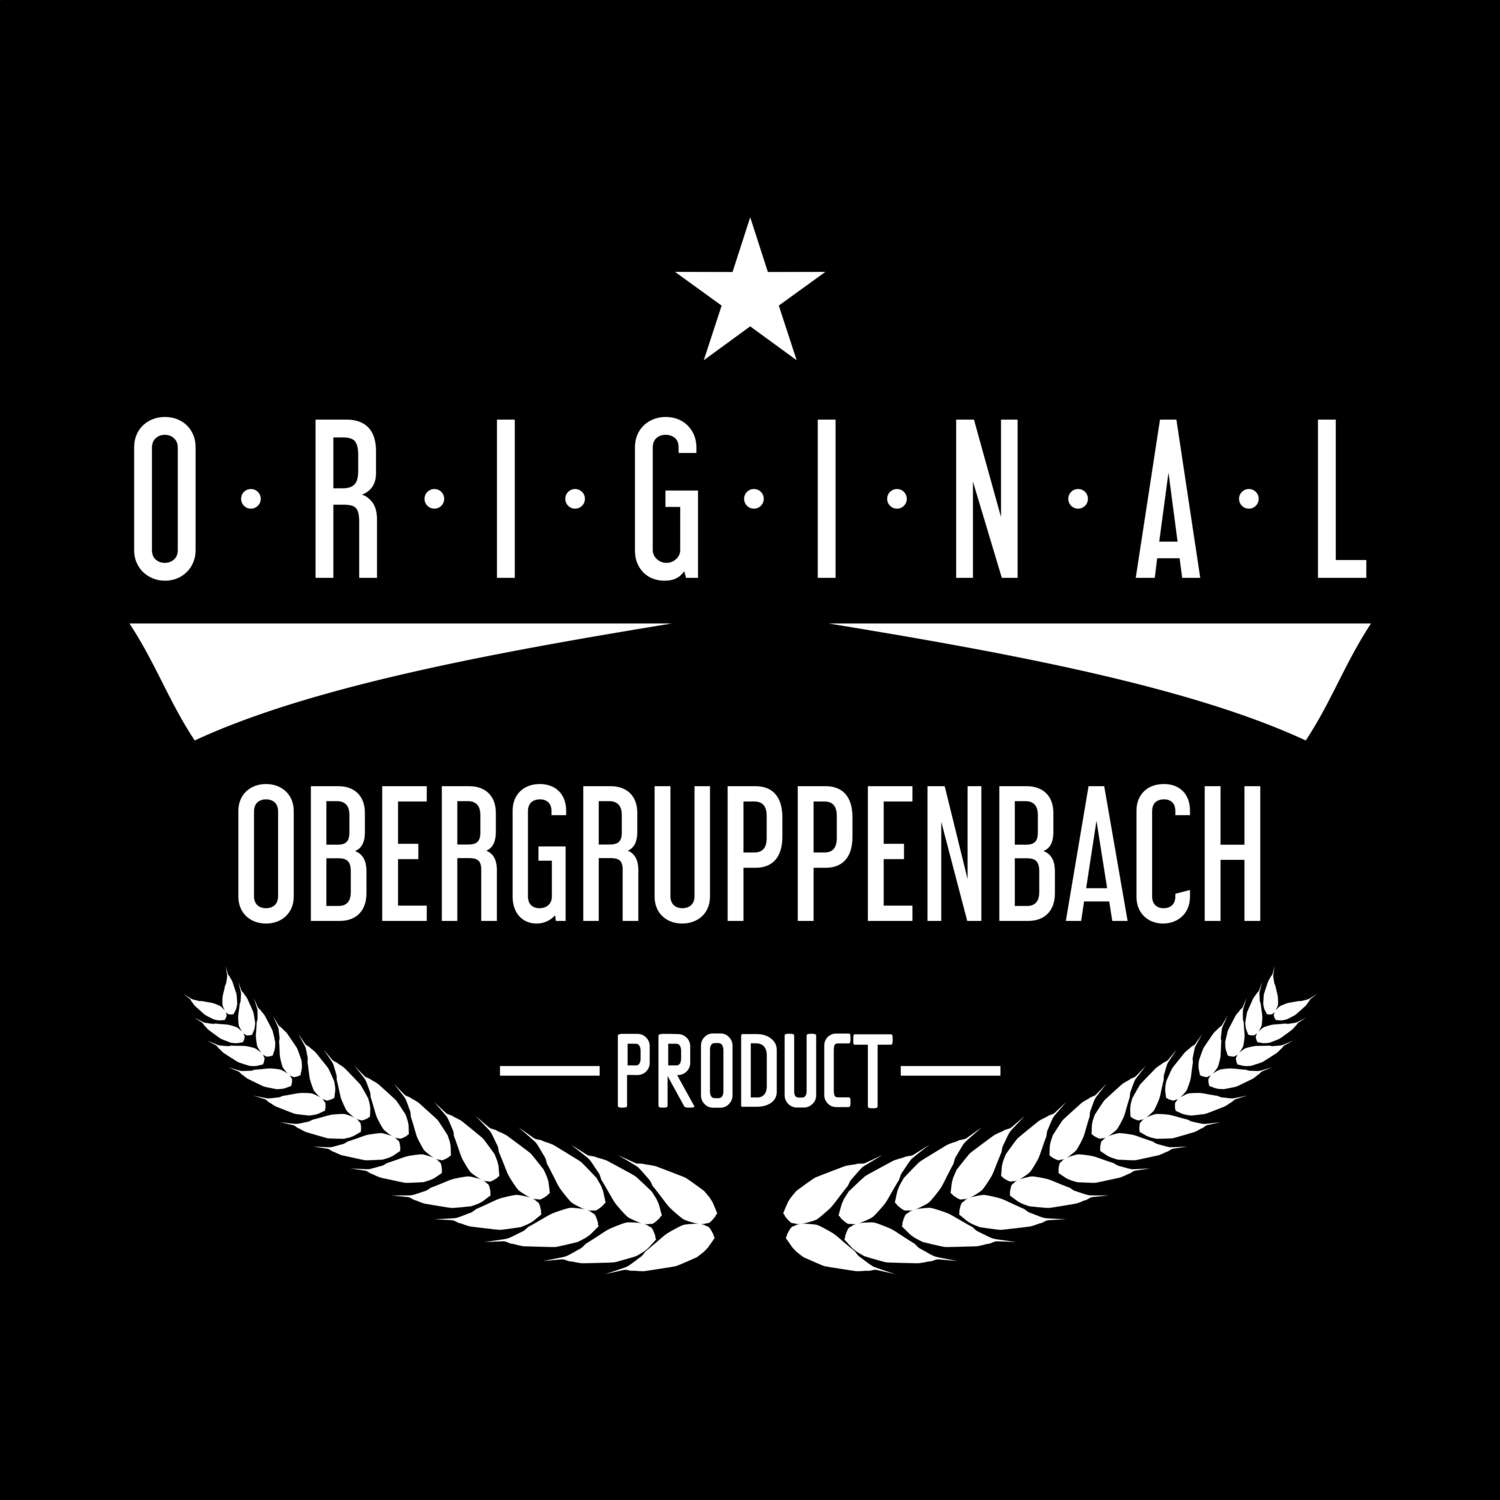 Obergruppenbach T-Shirt »Original Product«